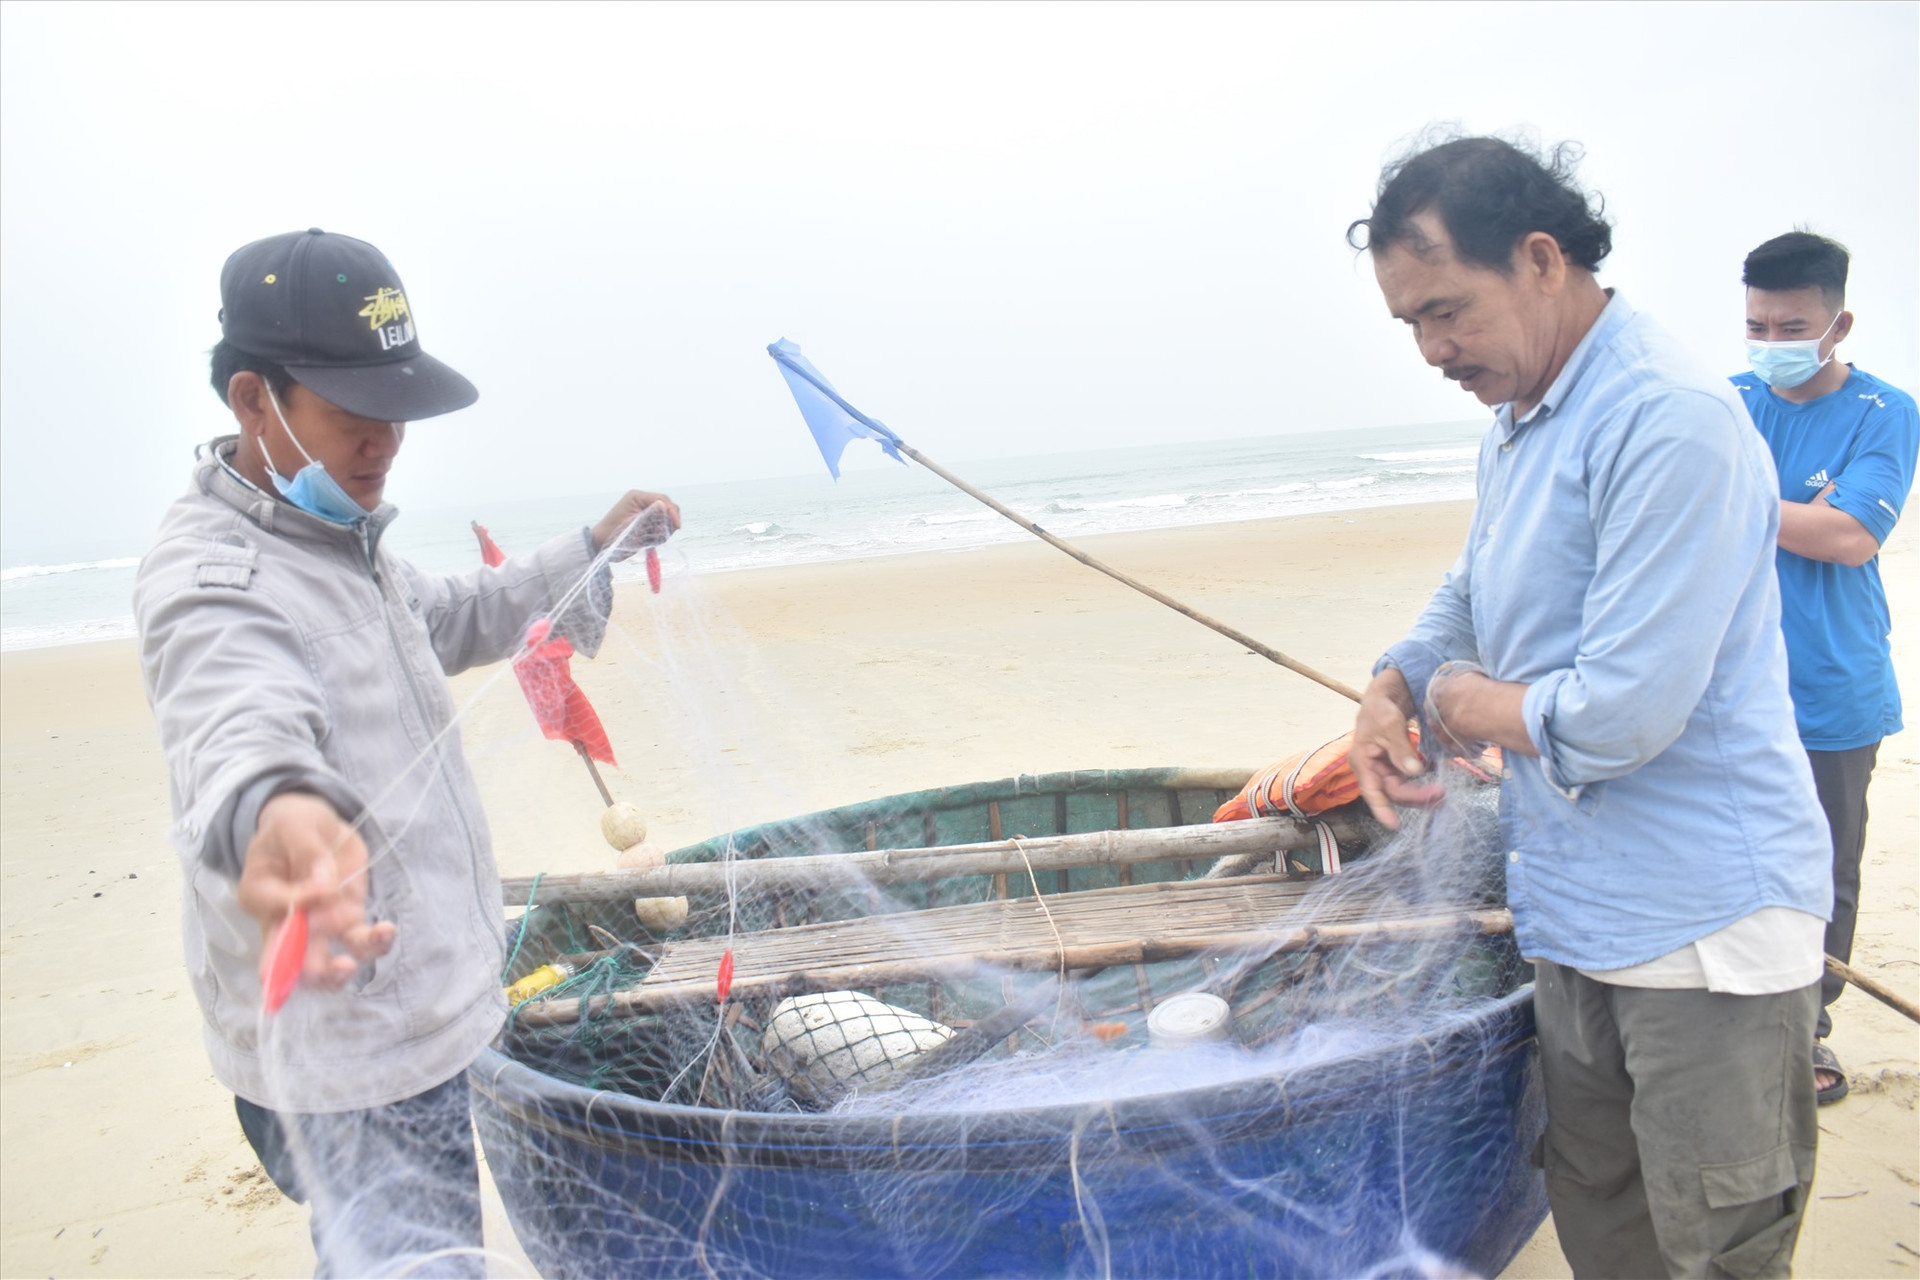 Ông Phạm Minh Thiện (67 tuổi) cho biết, cá khoai được bán cho các chợ, nhà hàng hải sản ở Đà Nẵng với giá 80 - 100 ngàn đồng/kg. Mỗi chuyến đi biển, ông thu được từ 500 - 1 triệu đồng.